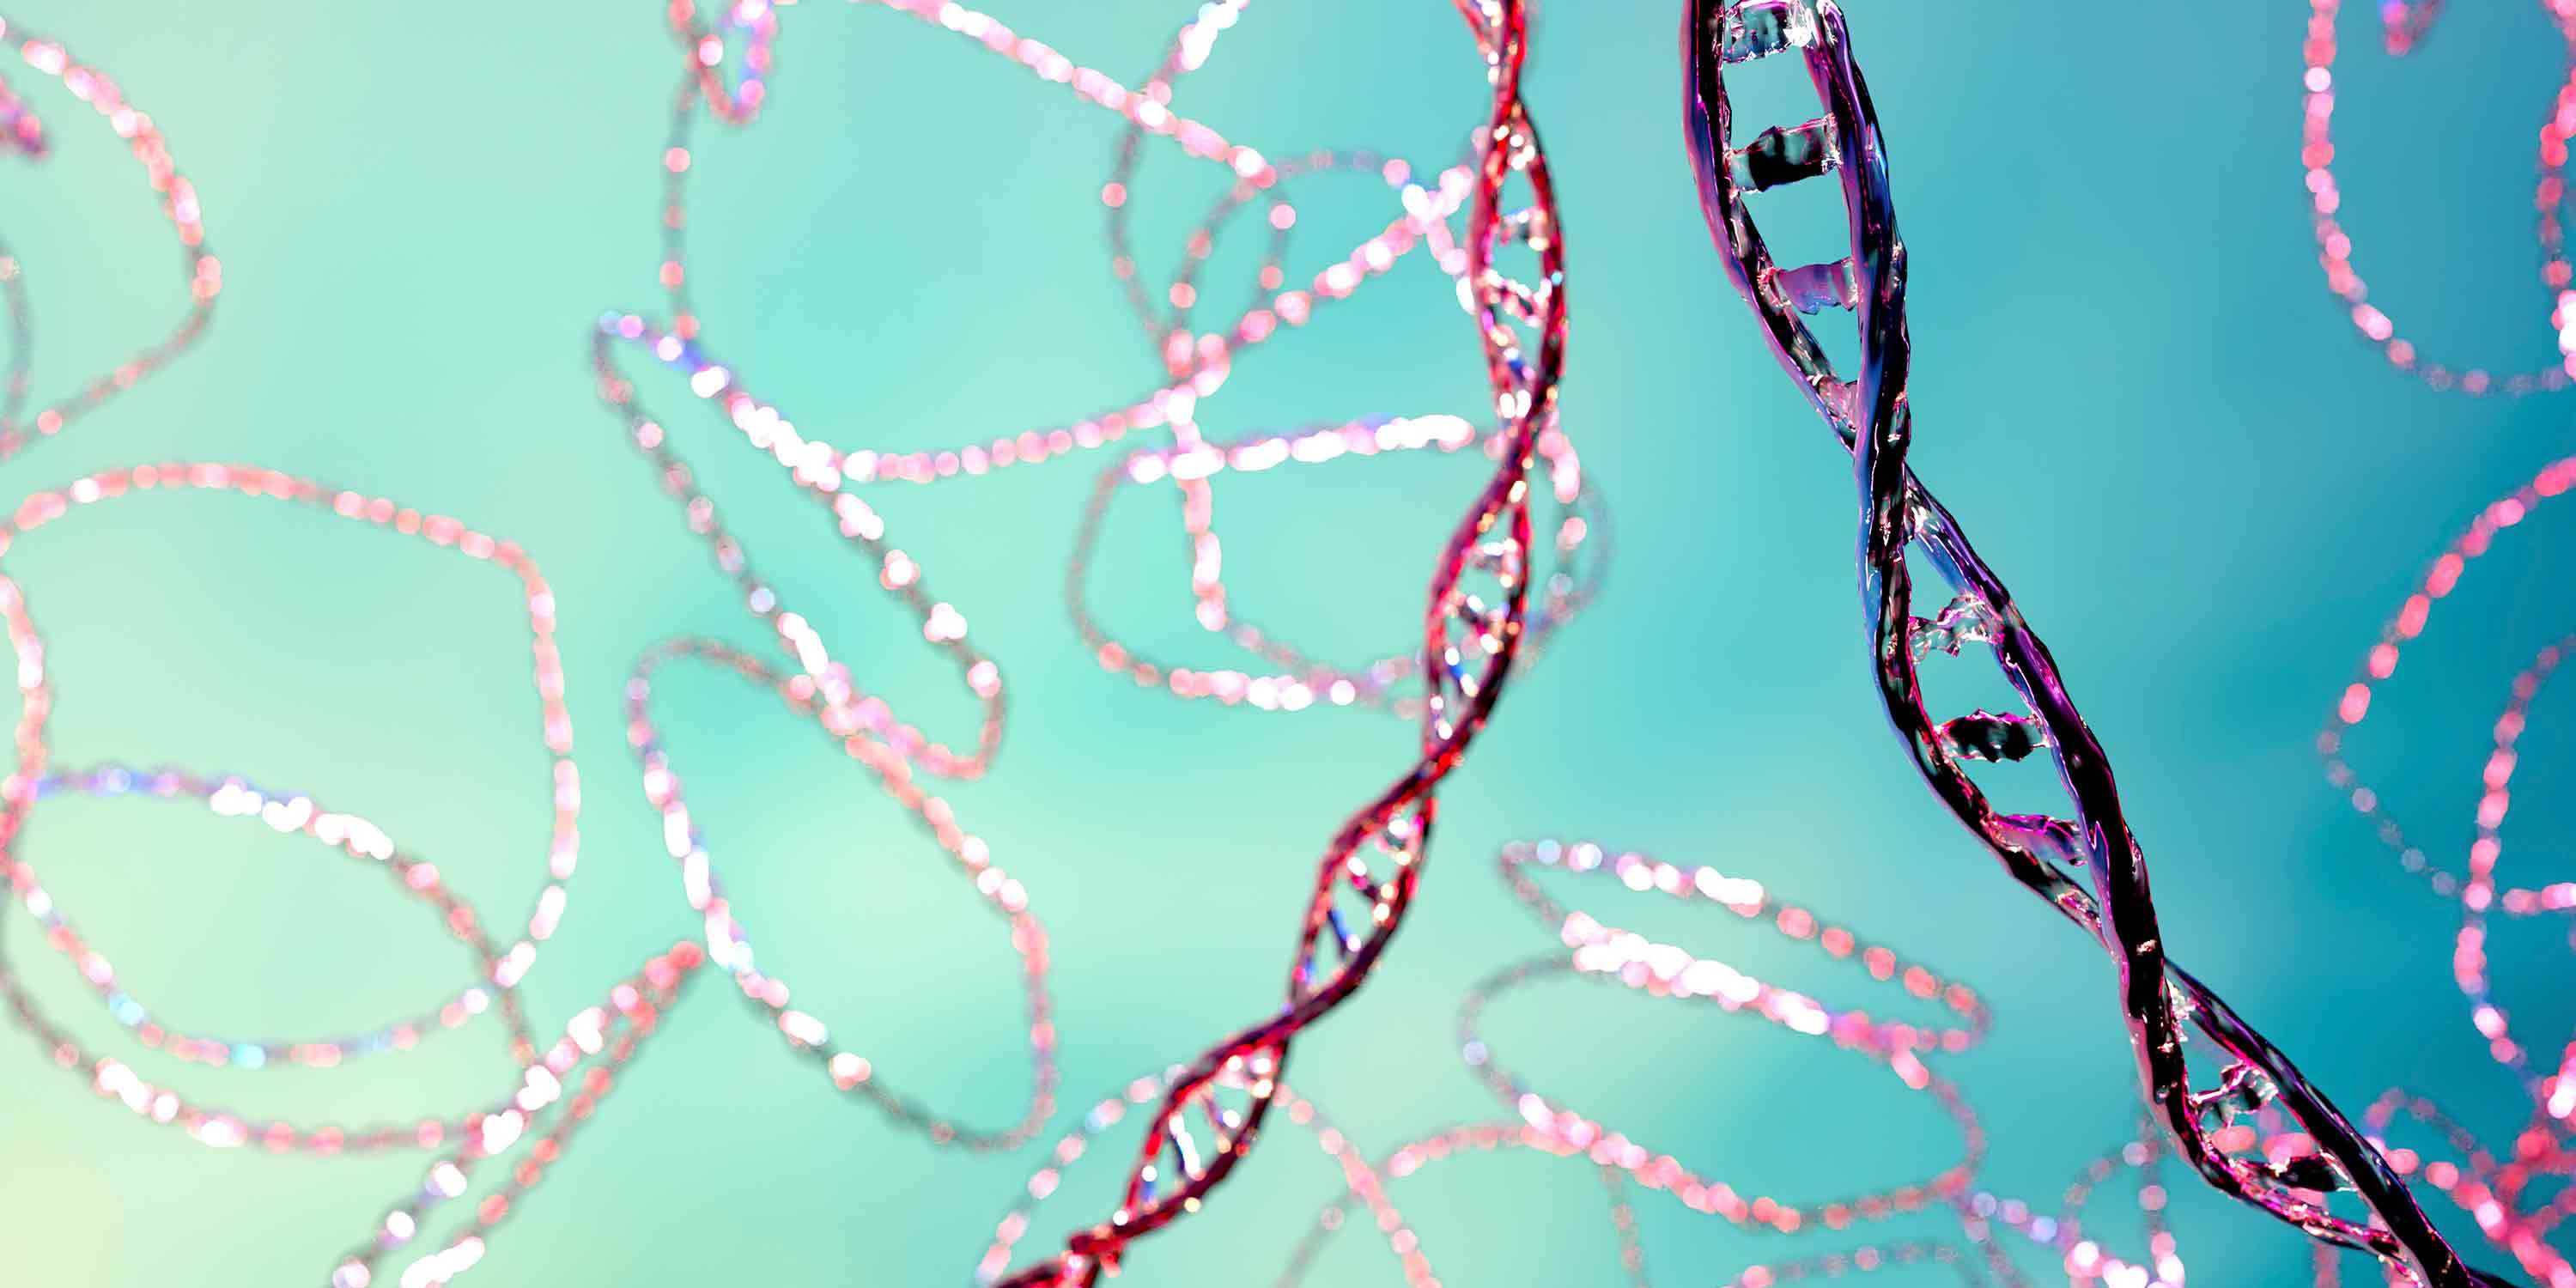 Illustration of DNA strands.